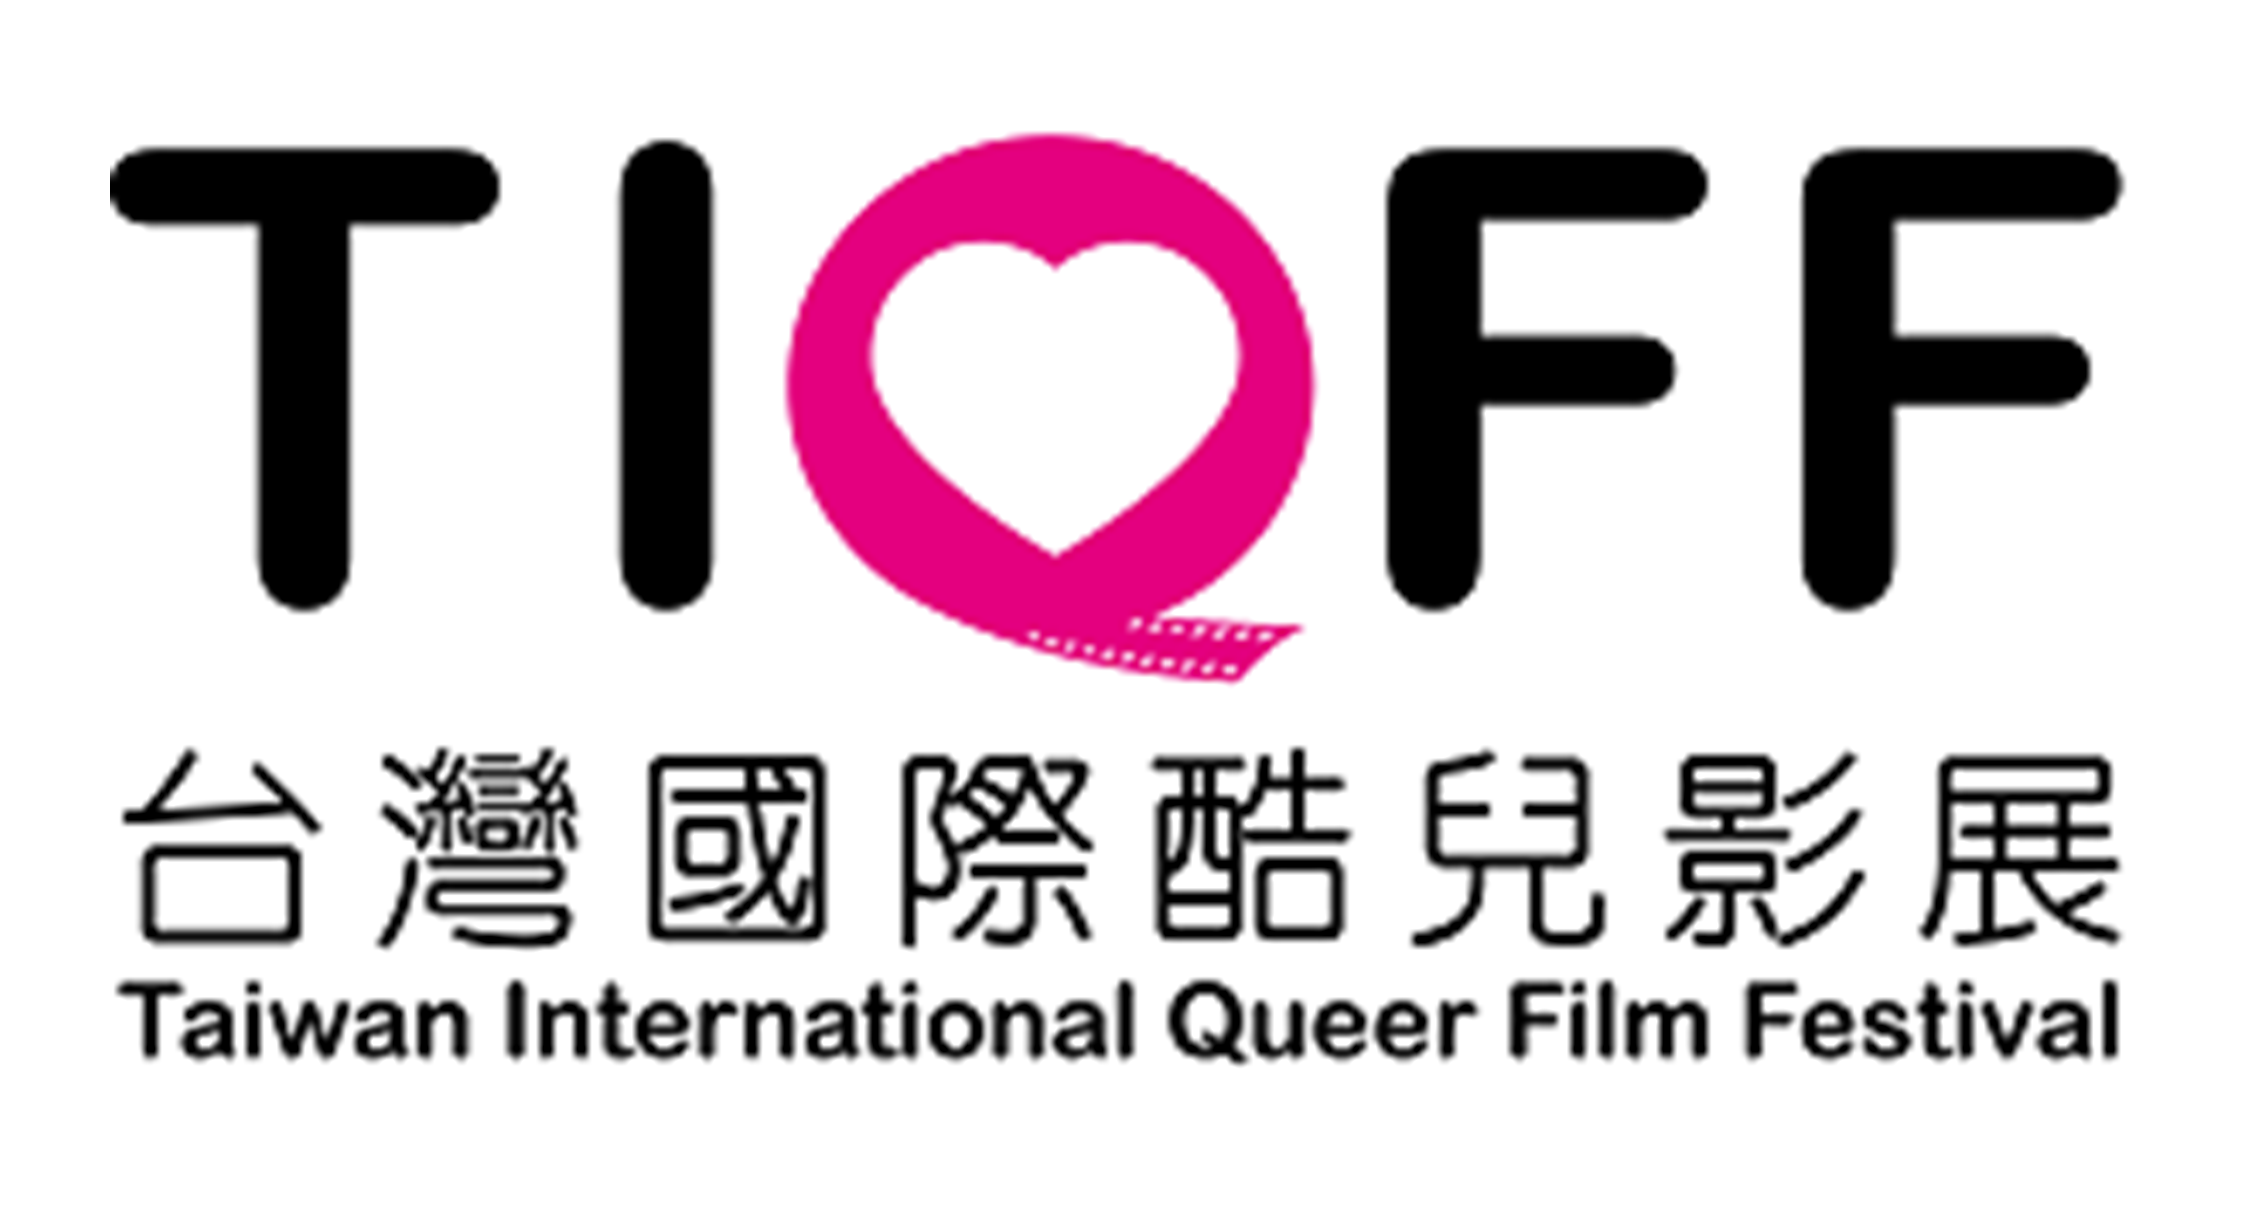 台湾国际酷儿影展 Taiwan IQFF